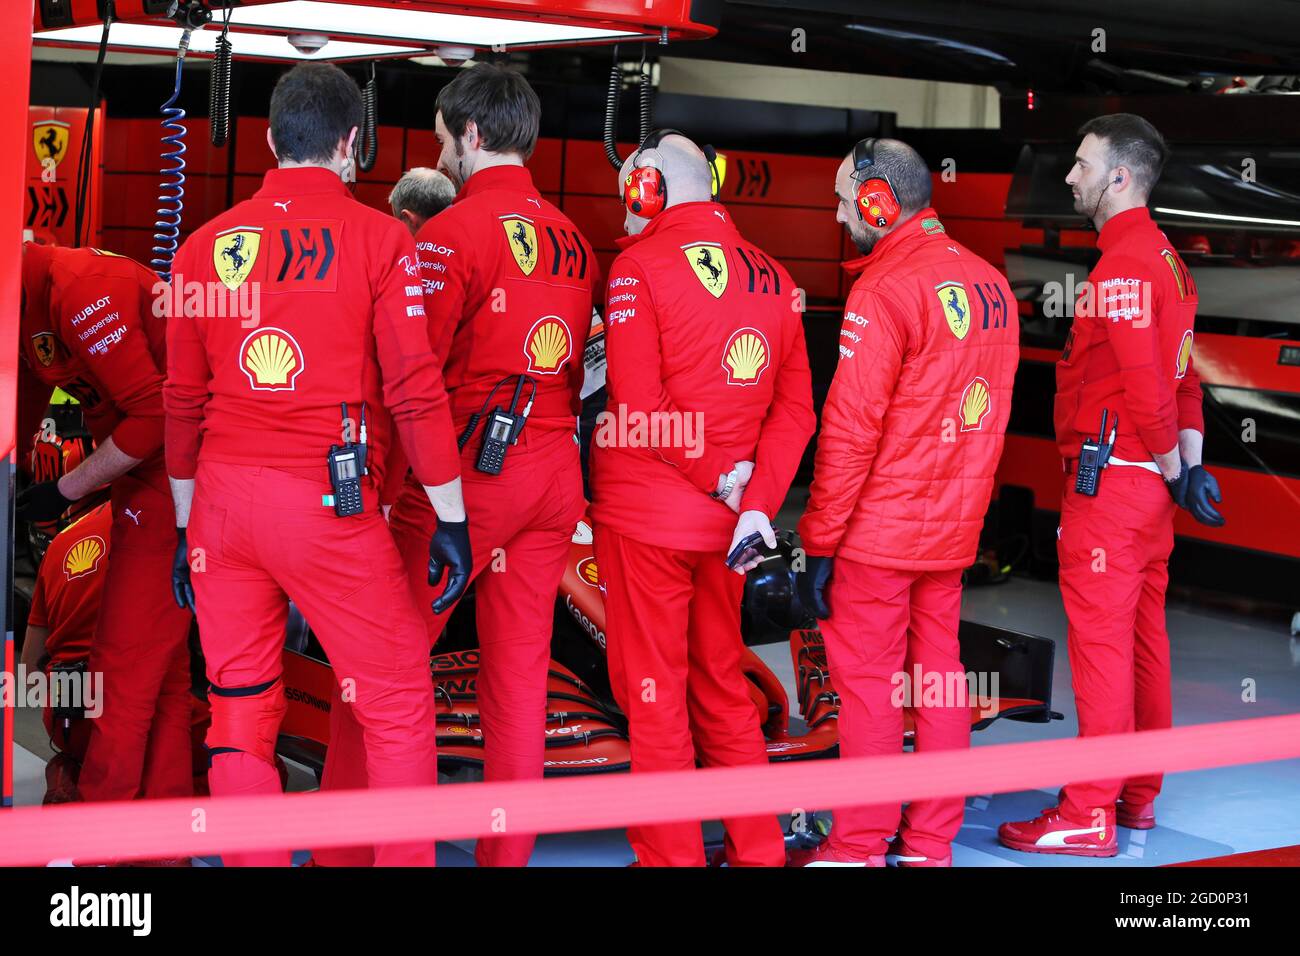 Ferrari crew immagini e fotografie stock ad alta risoluzione - Alamy